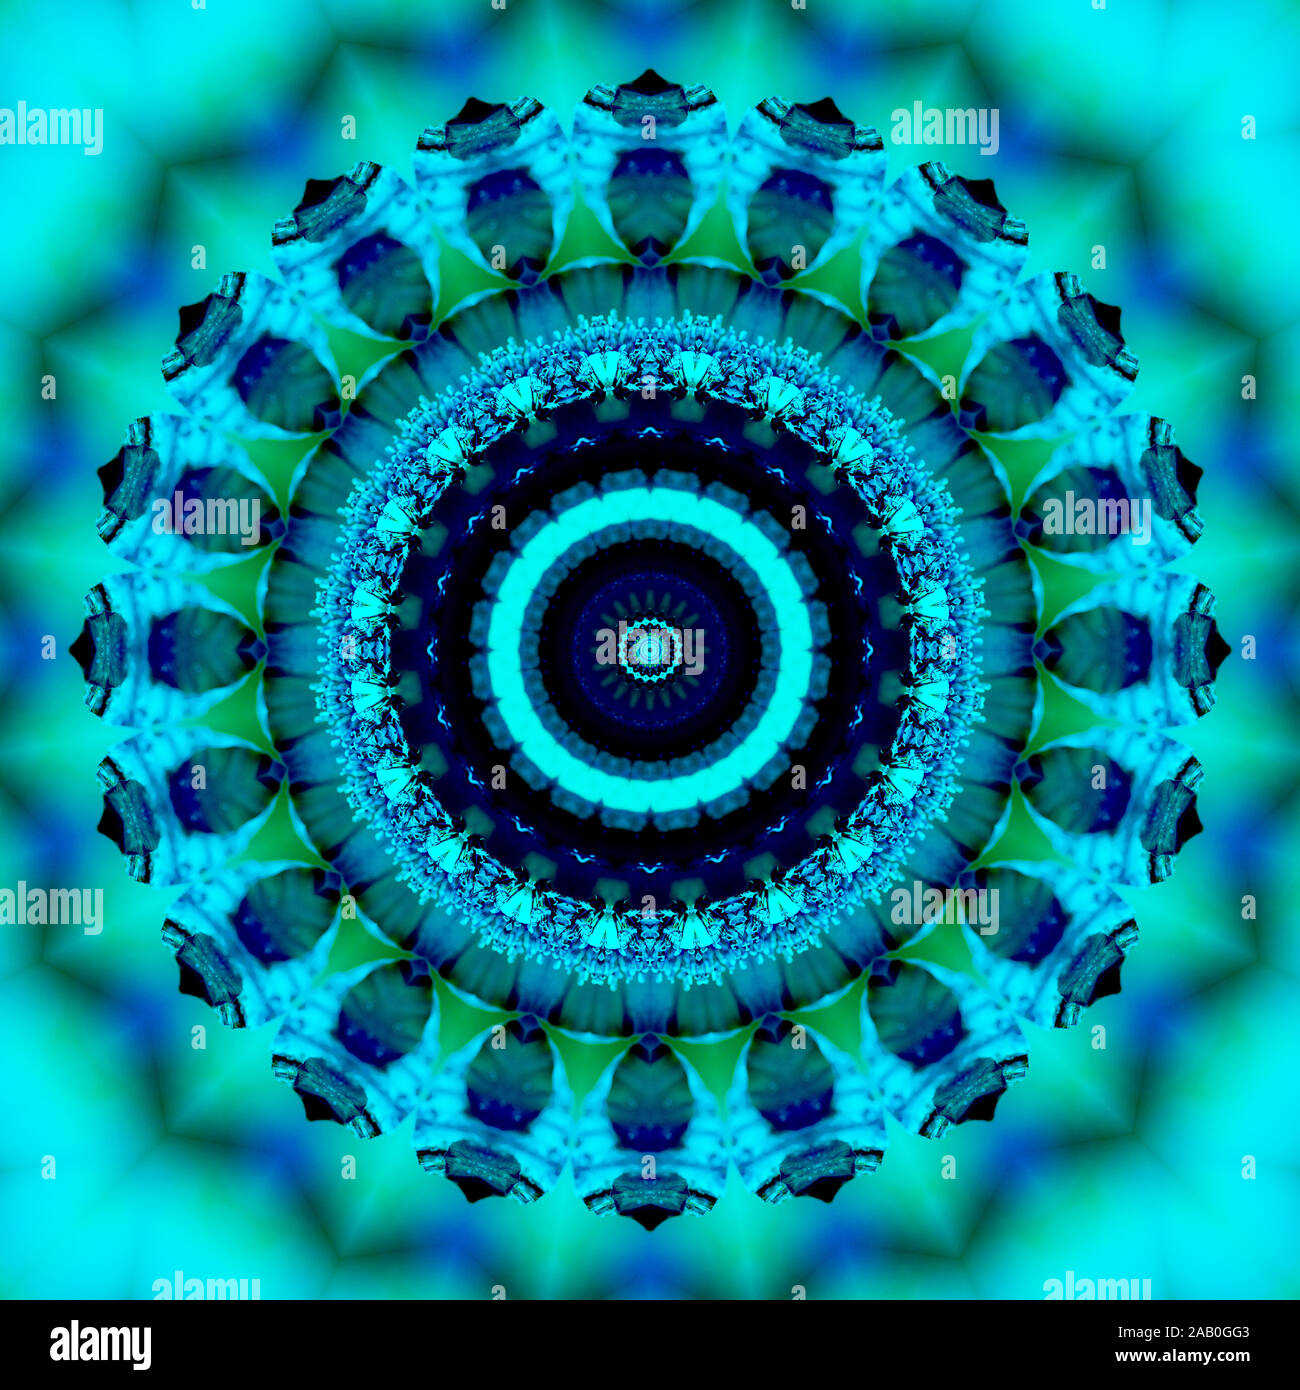 Florale kaleidoskopartige Muster. Geometrische Verzierung. Mandala. Zusammenfassung Hintergrund in Blau- und Grüntönen Stockfoto